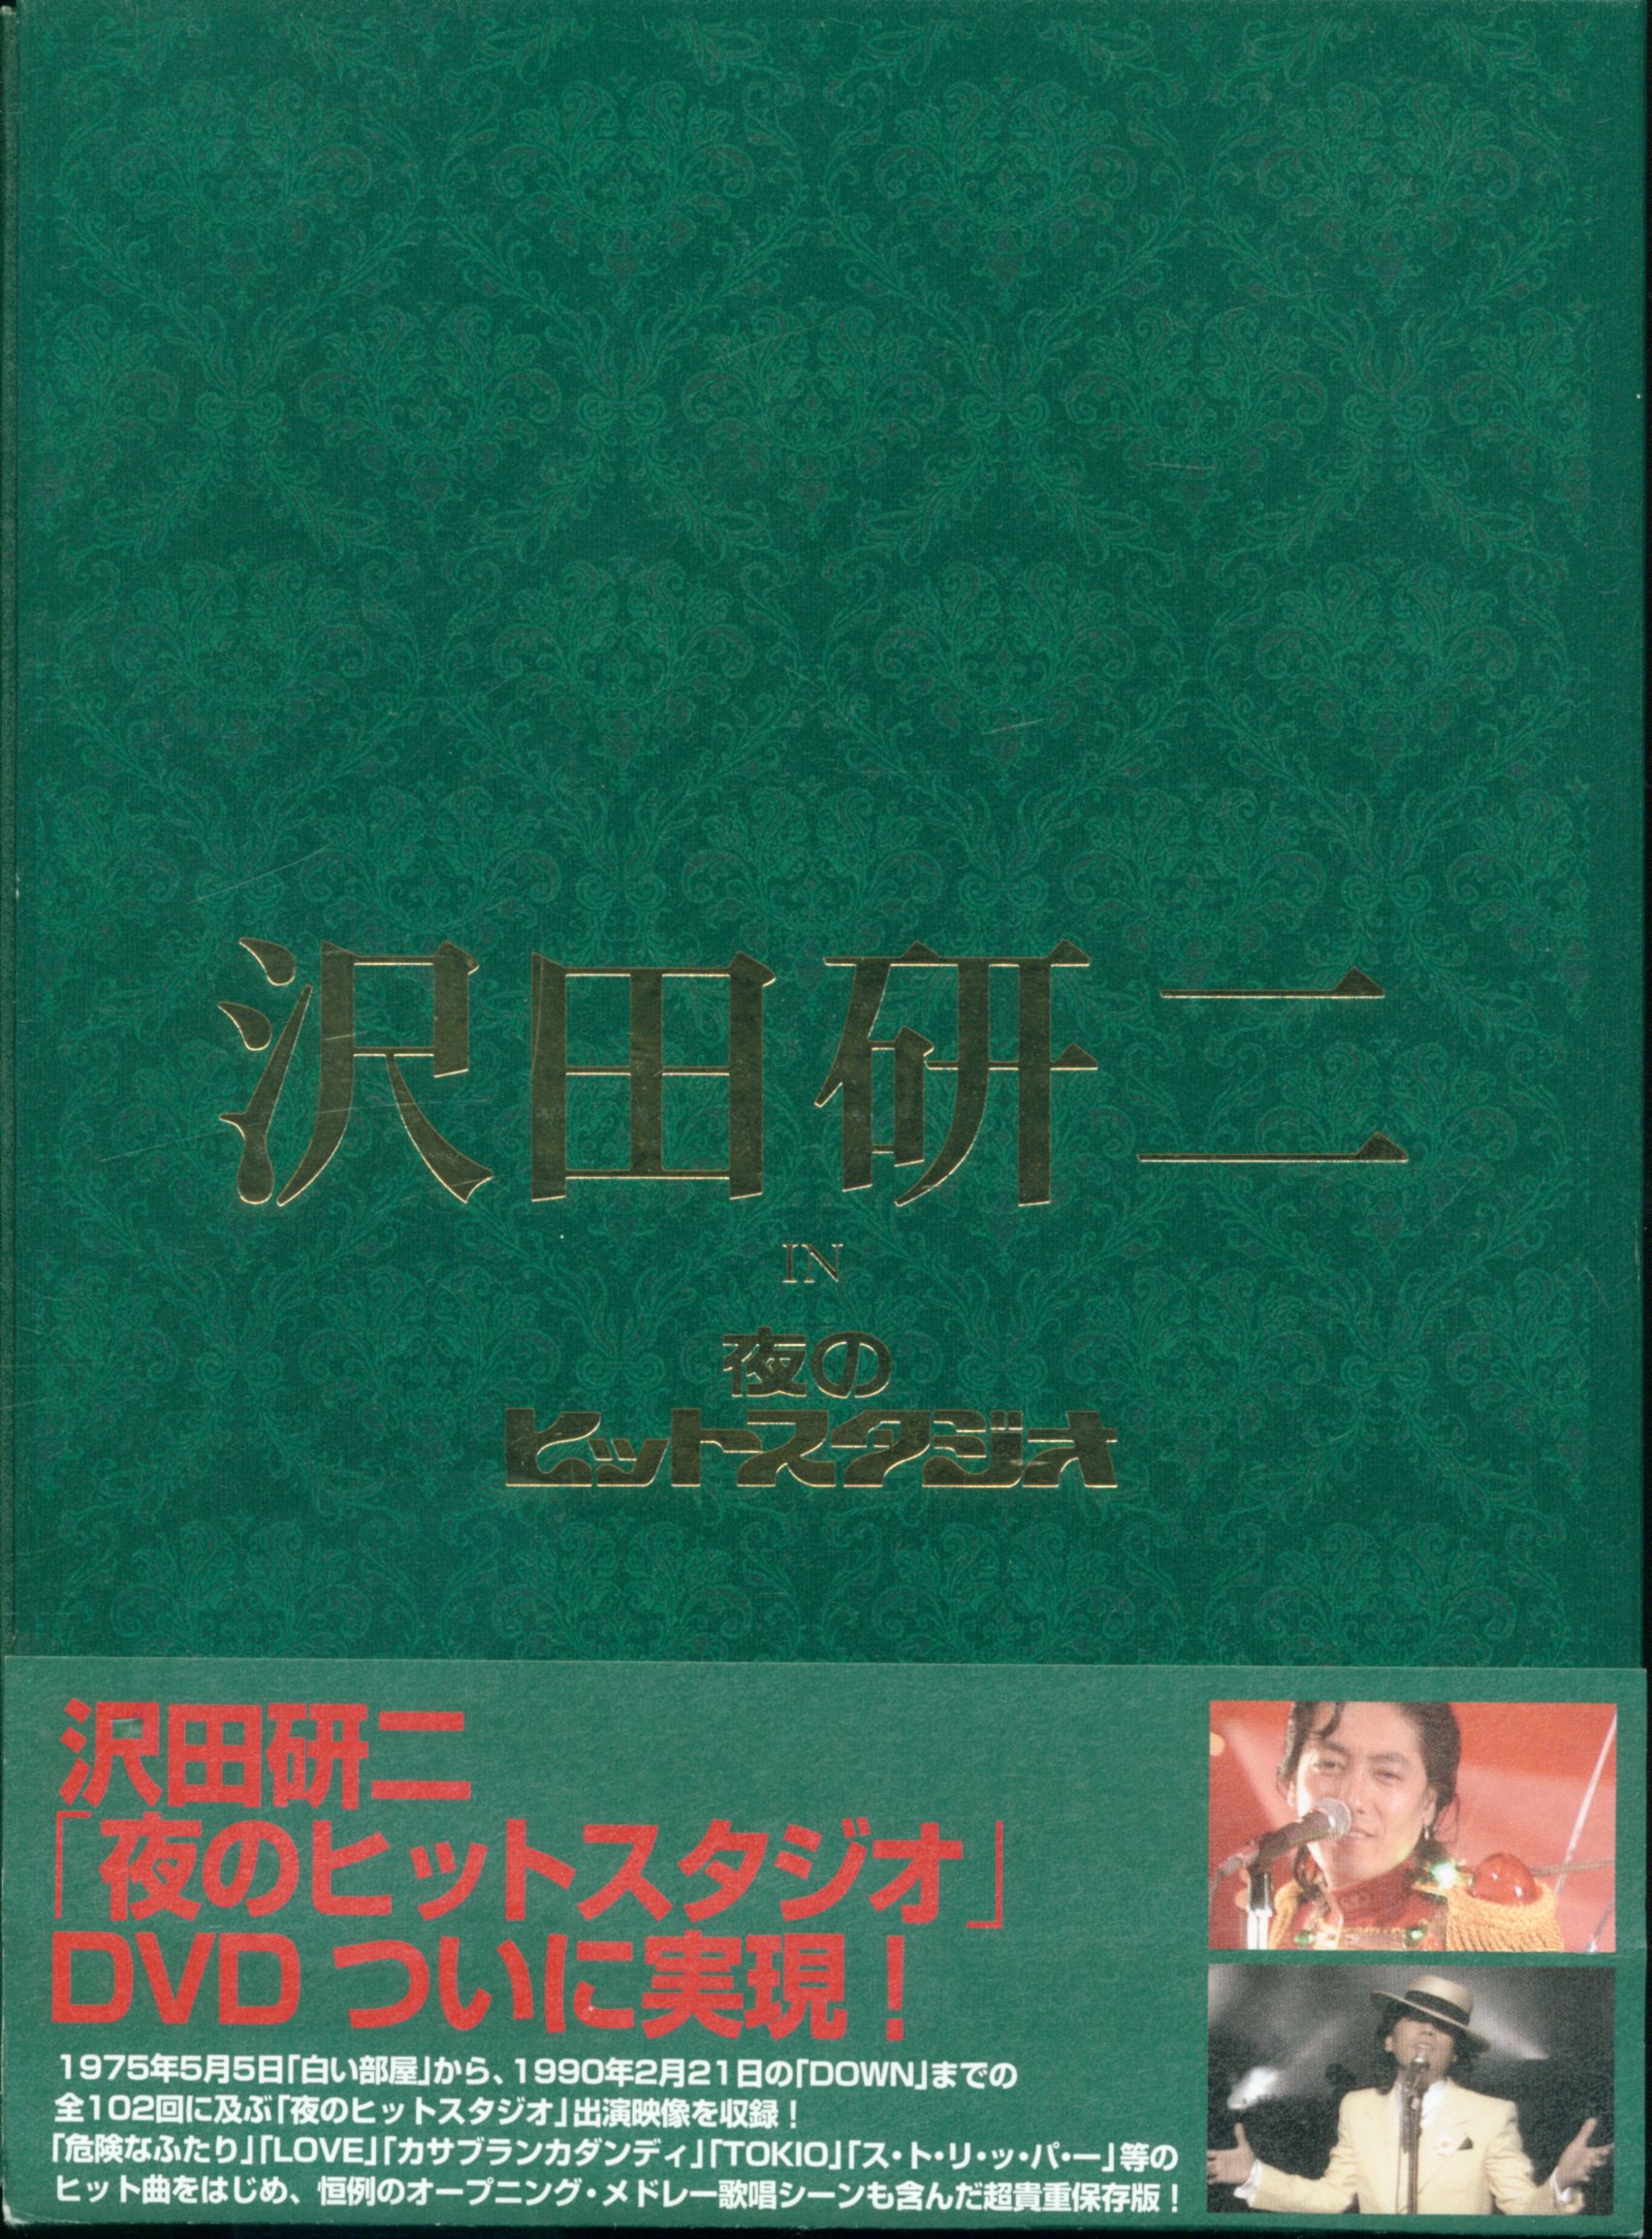 沢田研二 夜のヒットスタジオ6枚組DVD - ミュージック